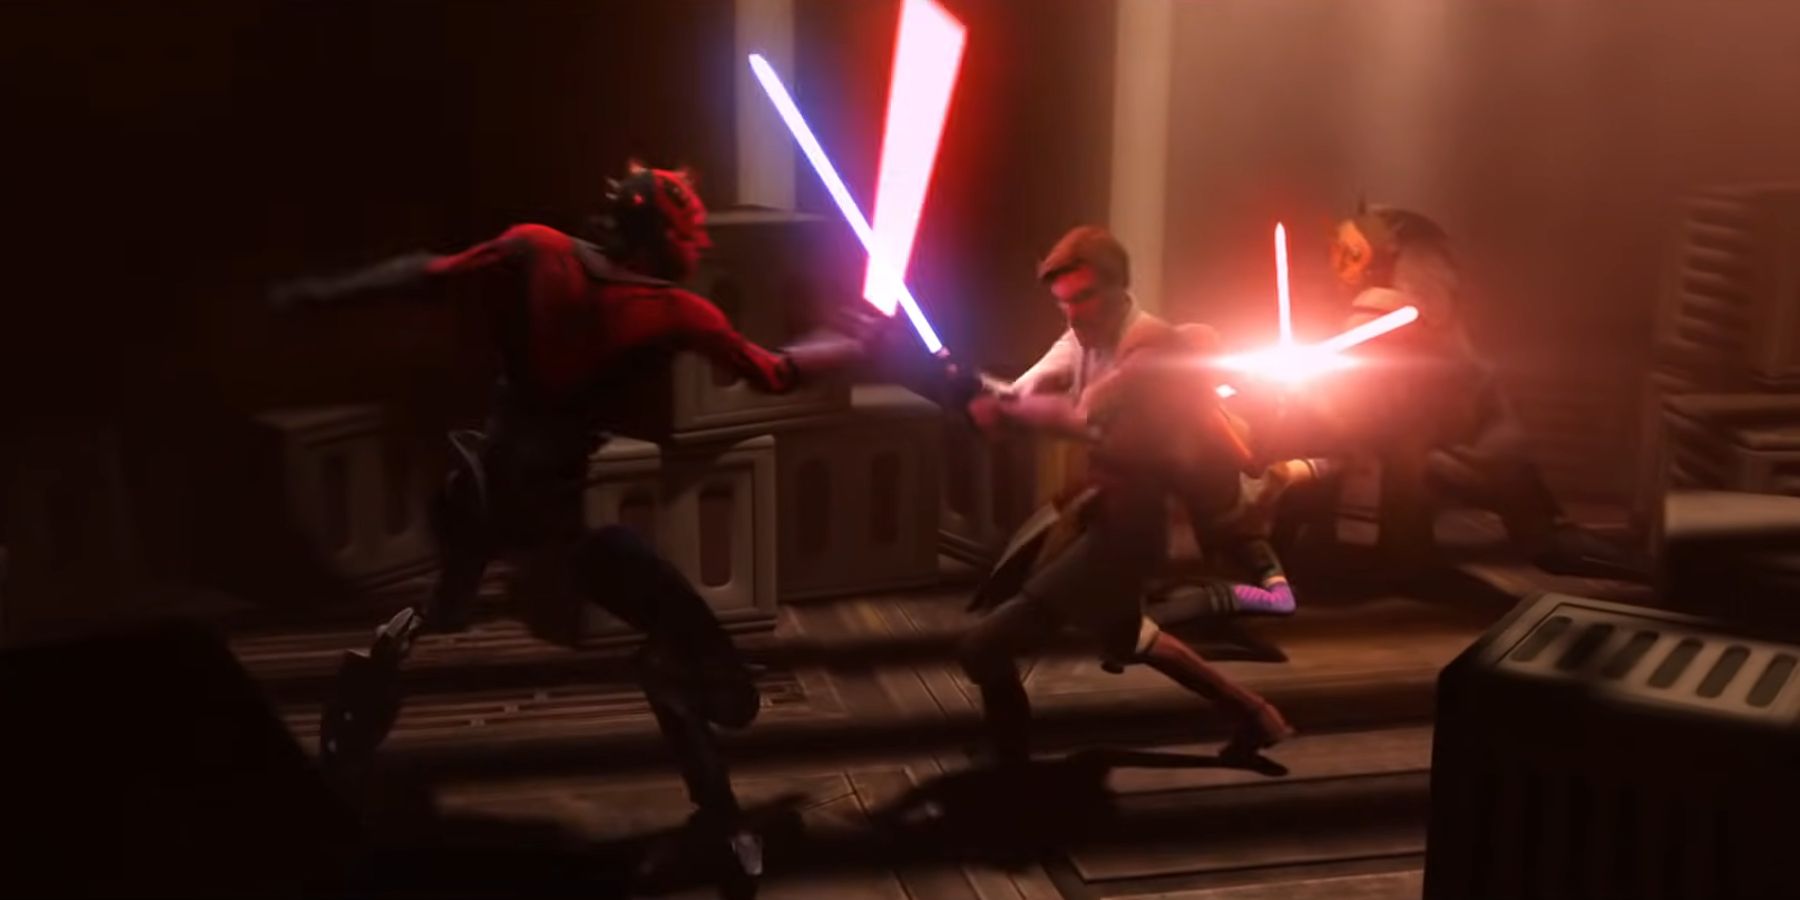 Obi-Wan Kenobi and Asajj Ventress battling Darth Maul and Savage Oppress in Star Wars The Clone Wars